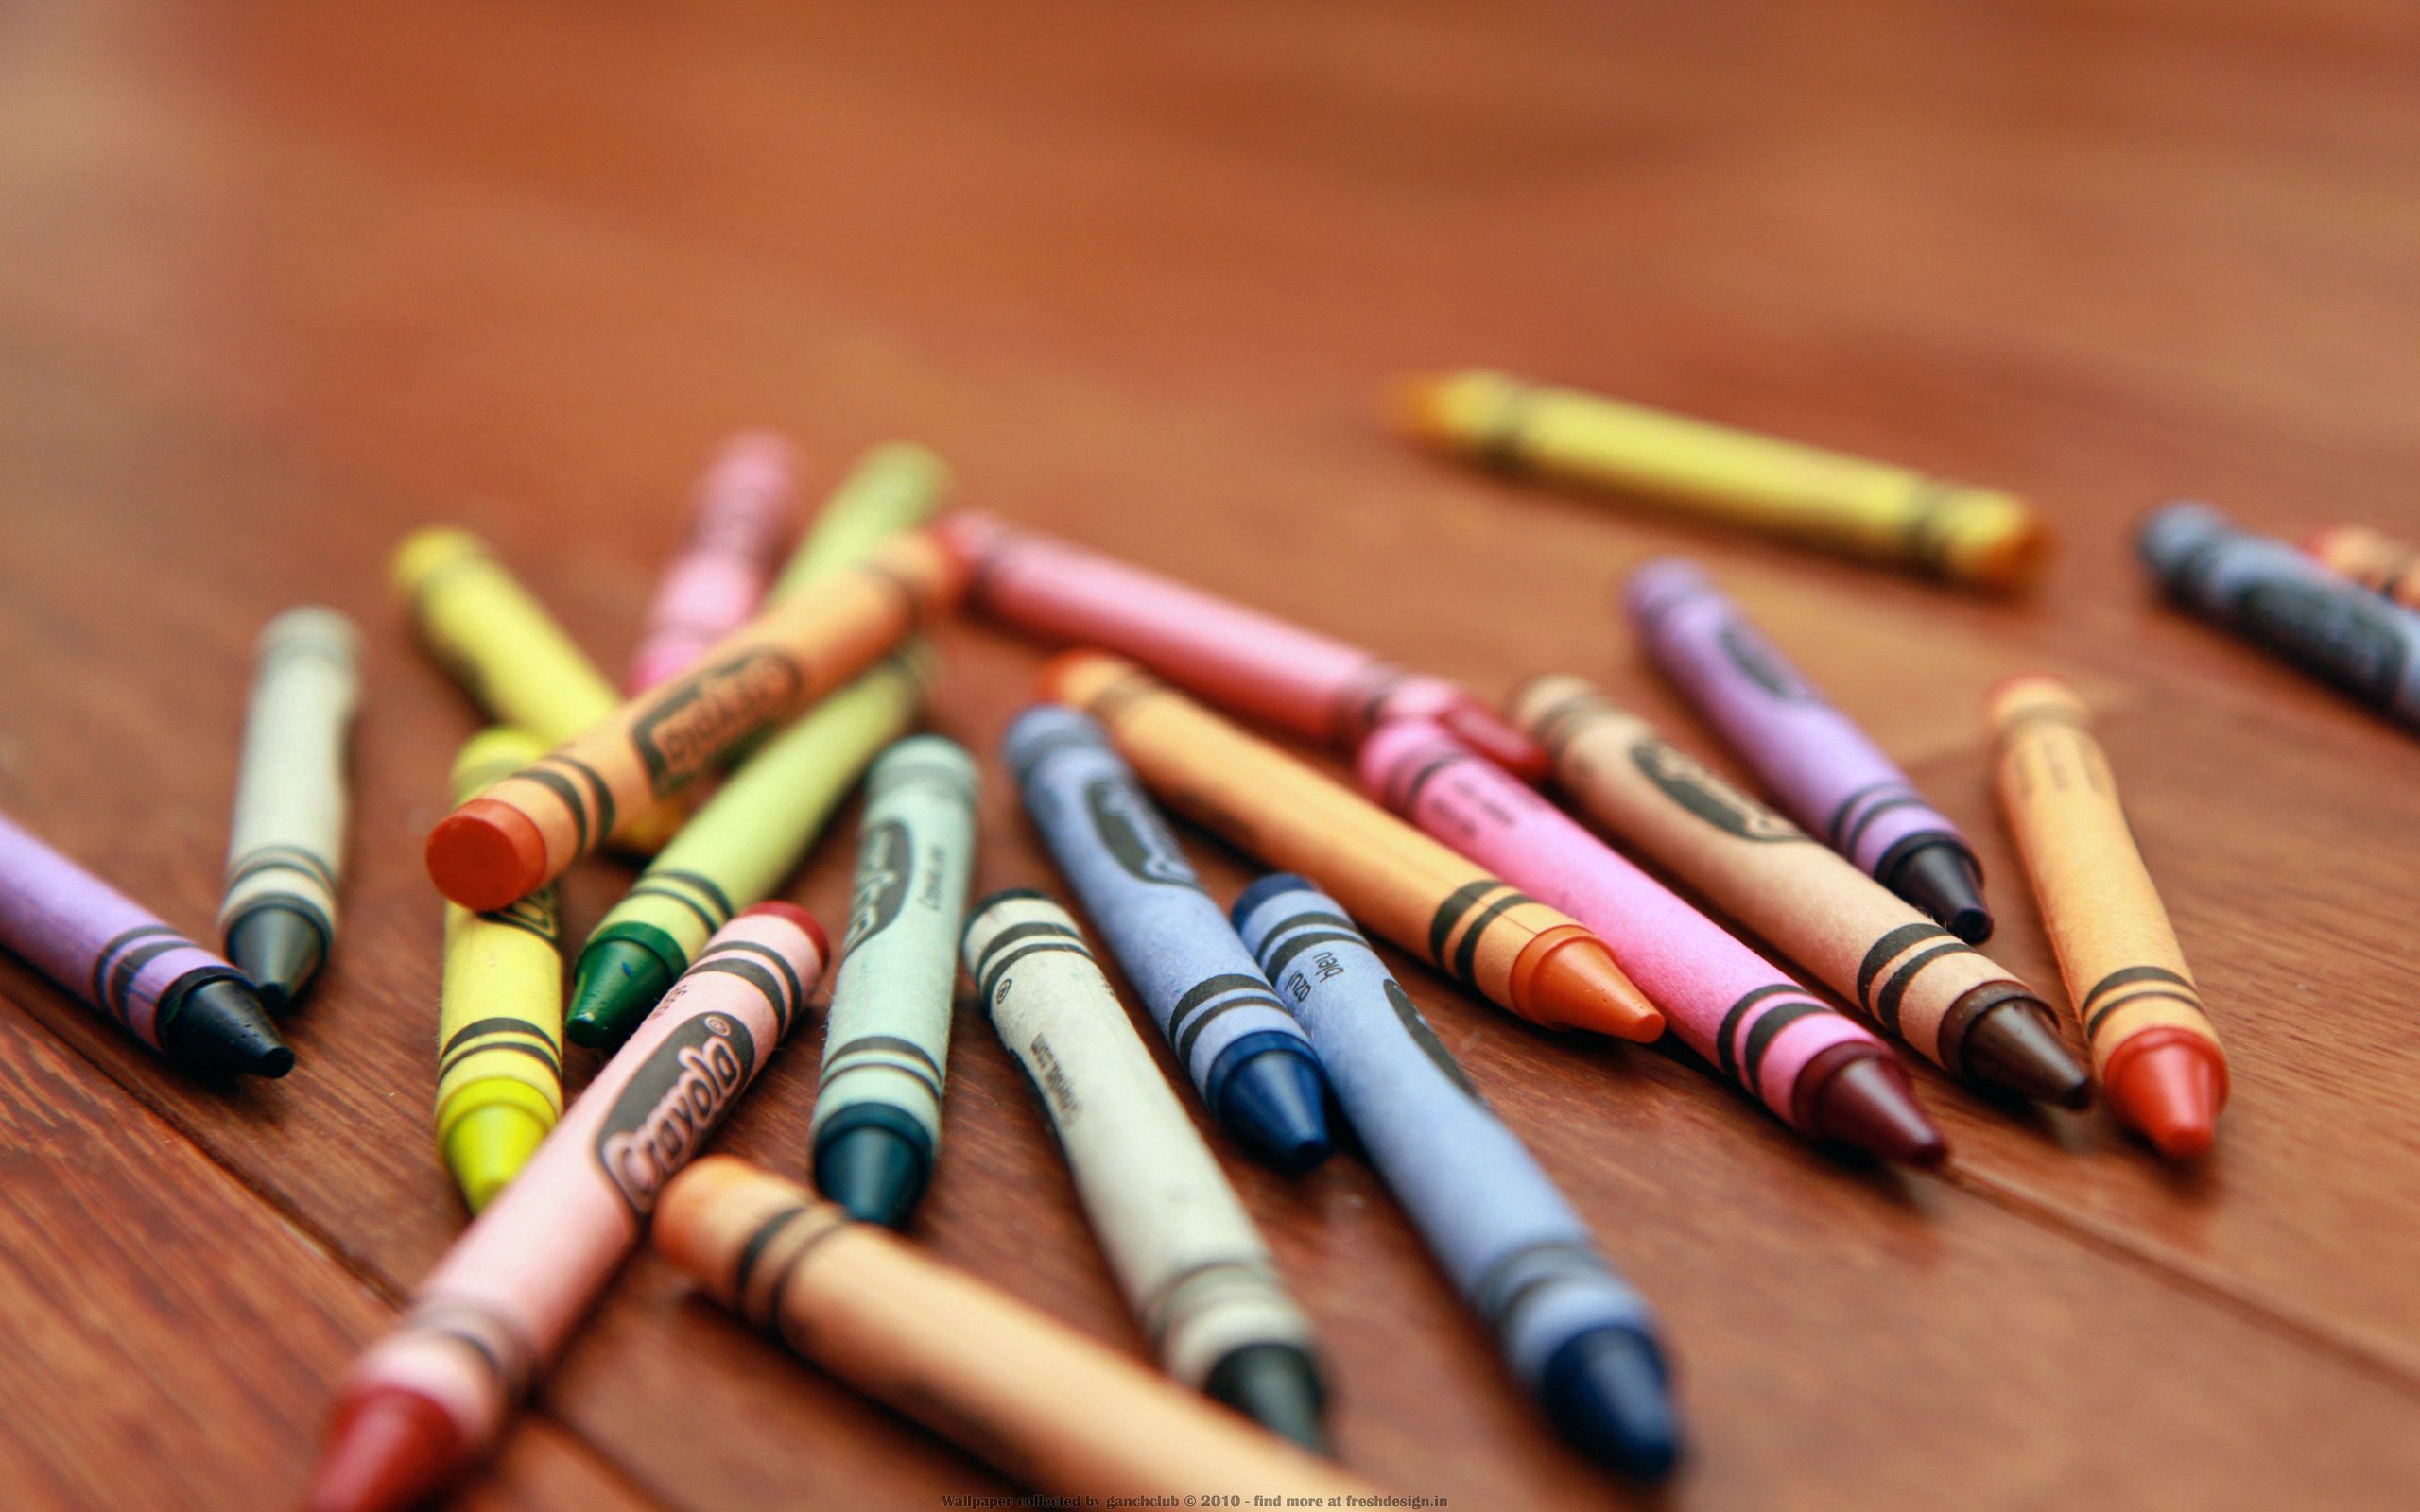 multicolored, miscellanea, miscellaneous, motley, table, pencils